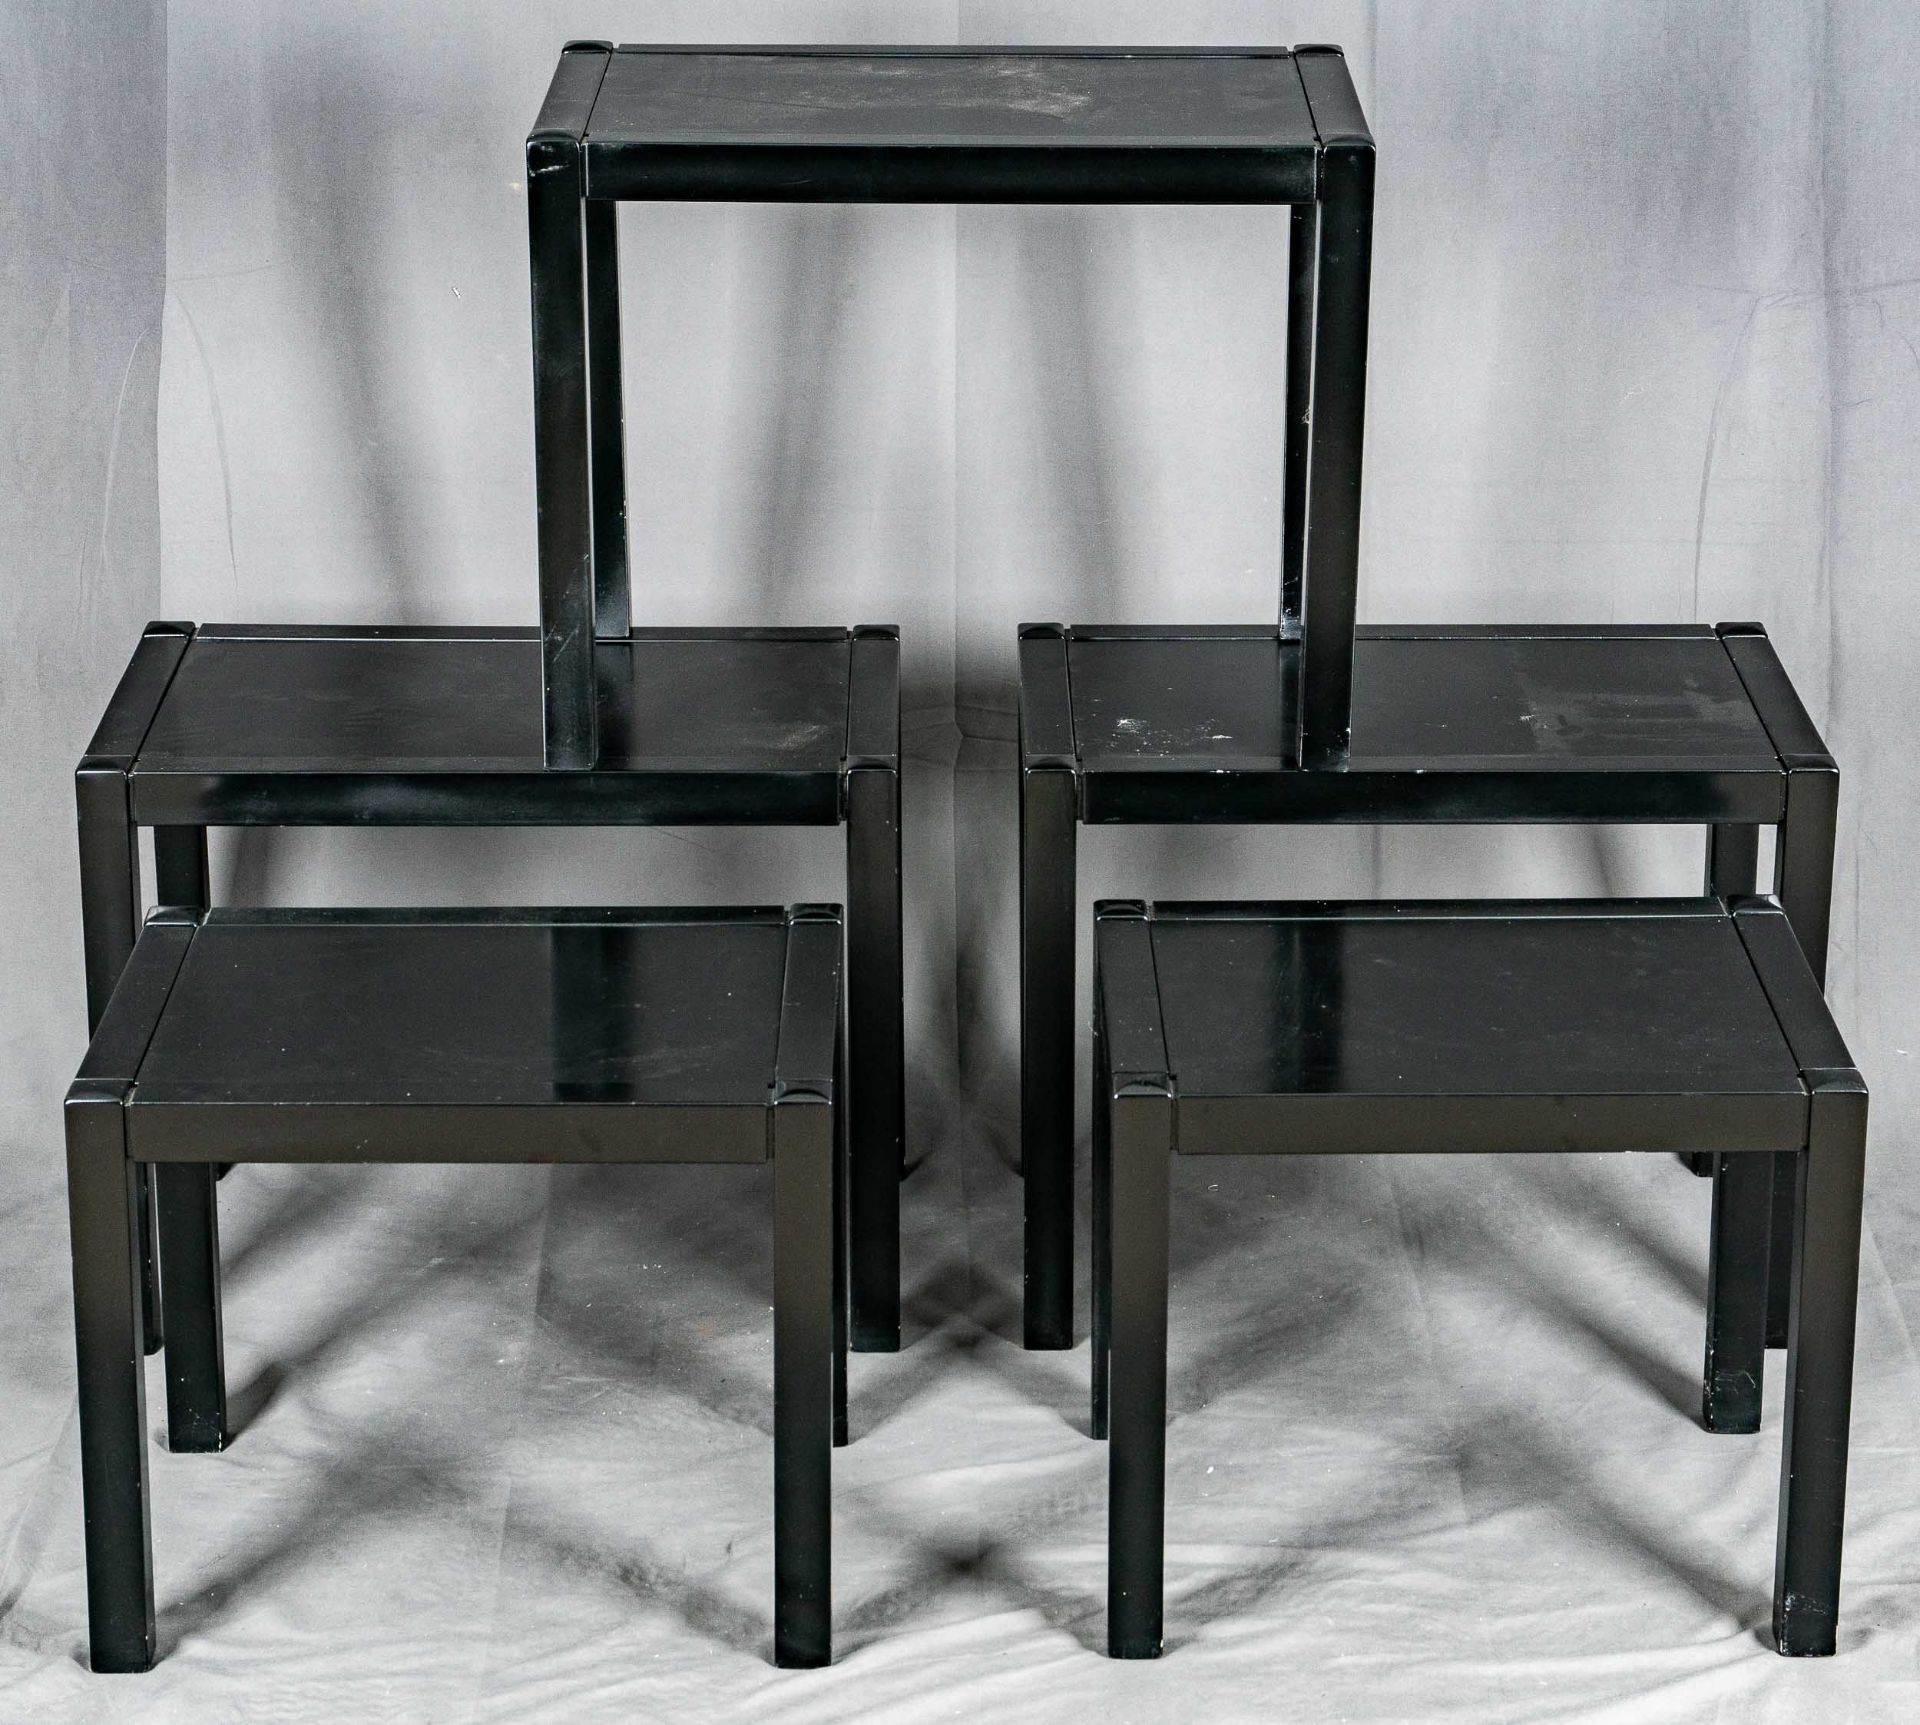 5 Beistelltische in 2 Größen, rechteckig, schwarz lackiertes Holz mit eingesetzter Tischplatte, des